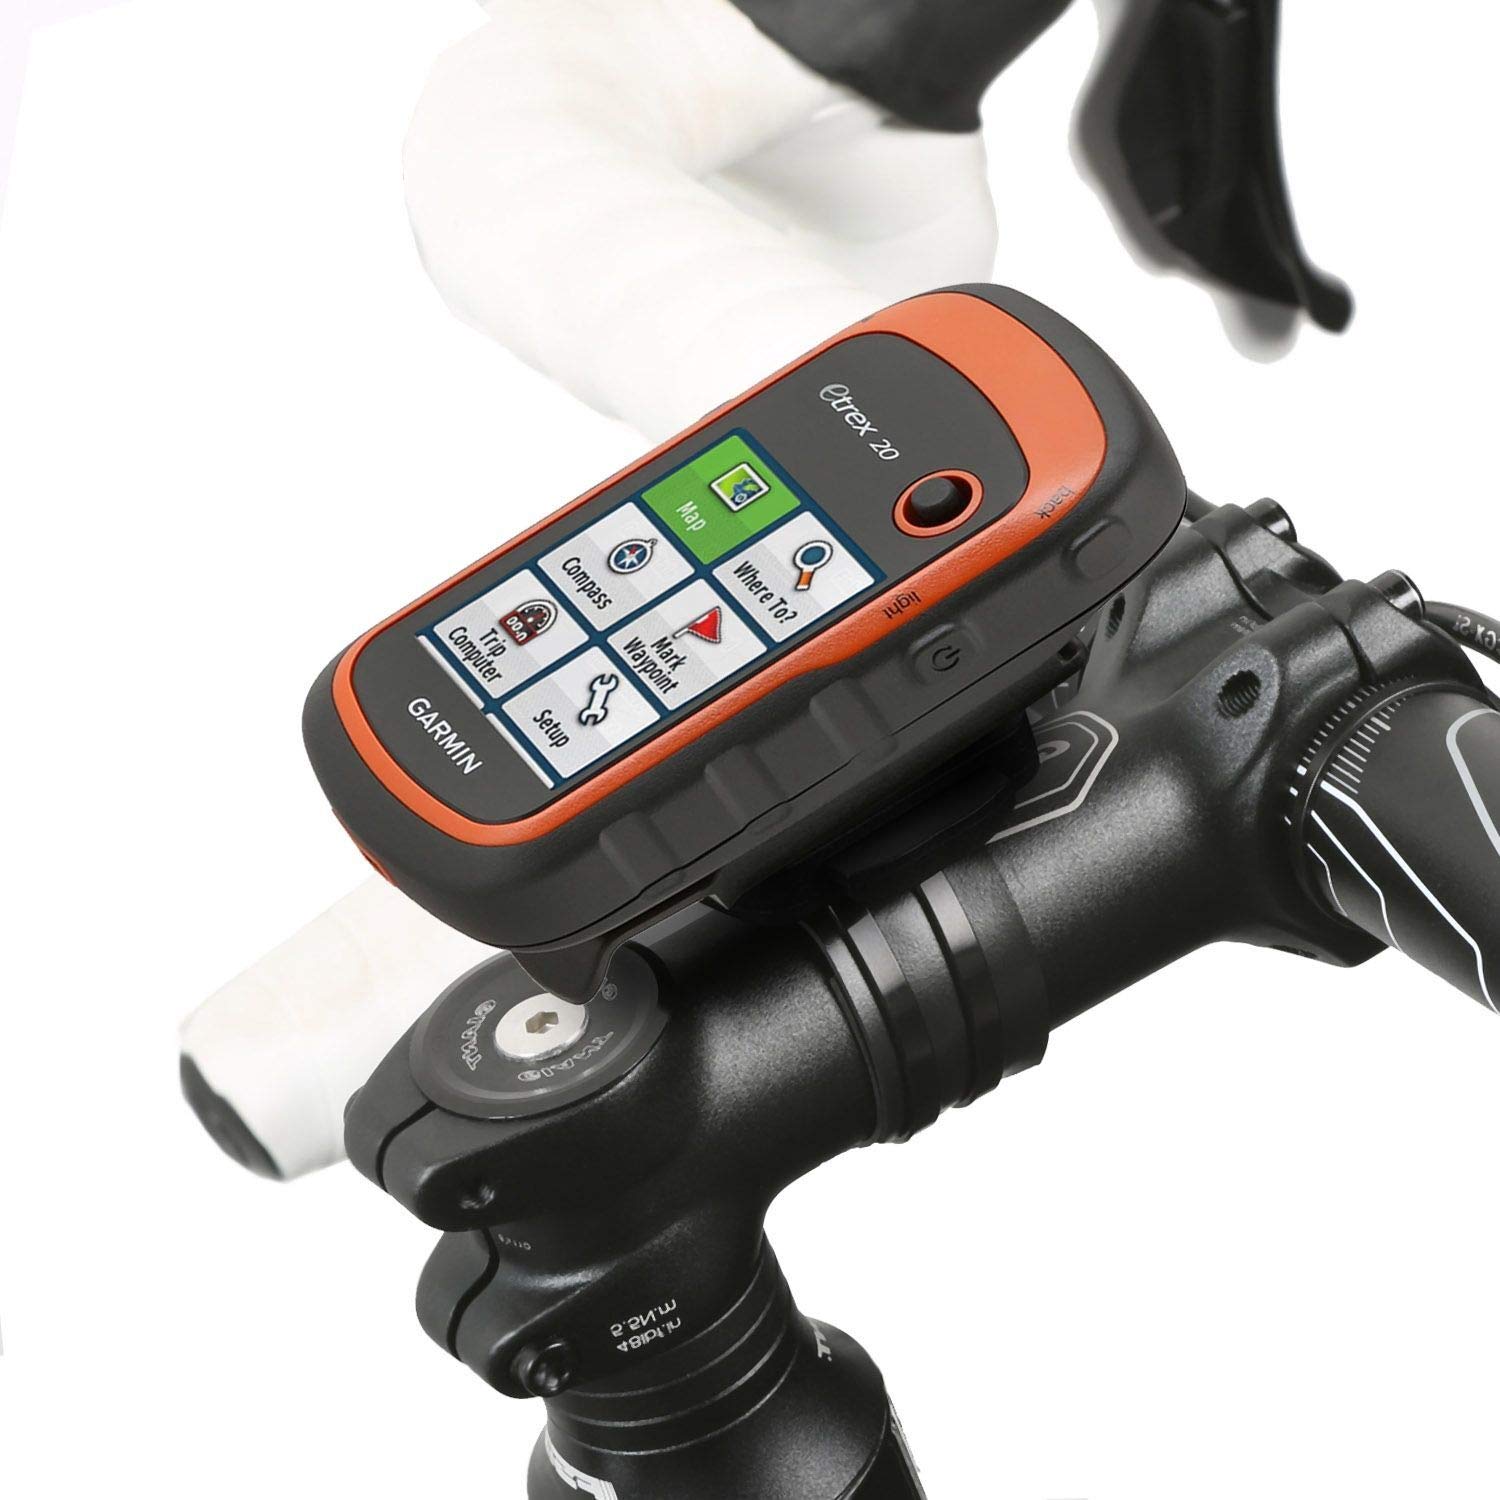 Wicked Chili Fahrrad Halterung kompatibel mit Garmin eTrex, Dakota, Oregon, Approach, Astro, GPSMAP (passgenau, QuickFix, mit wiederverschließbaren Kabelbinder, Made in Germany) schwarz